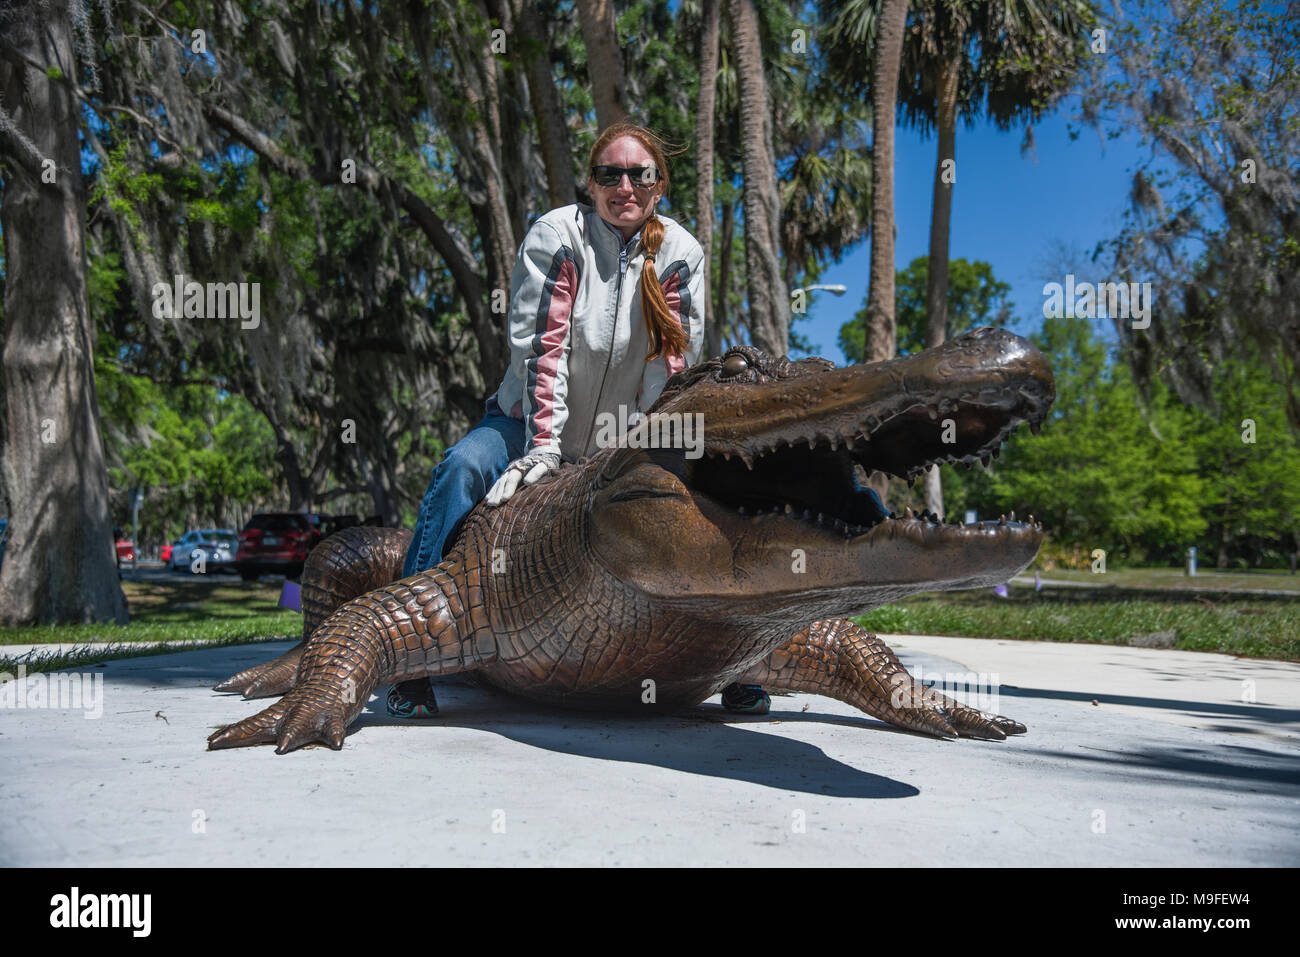 Jolie tête rouge portant des lunettes de soleil fille posant avec un alligator Bronze Statue Banque D'Images